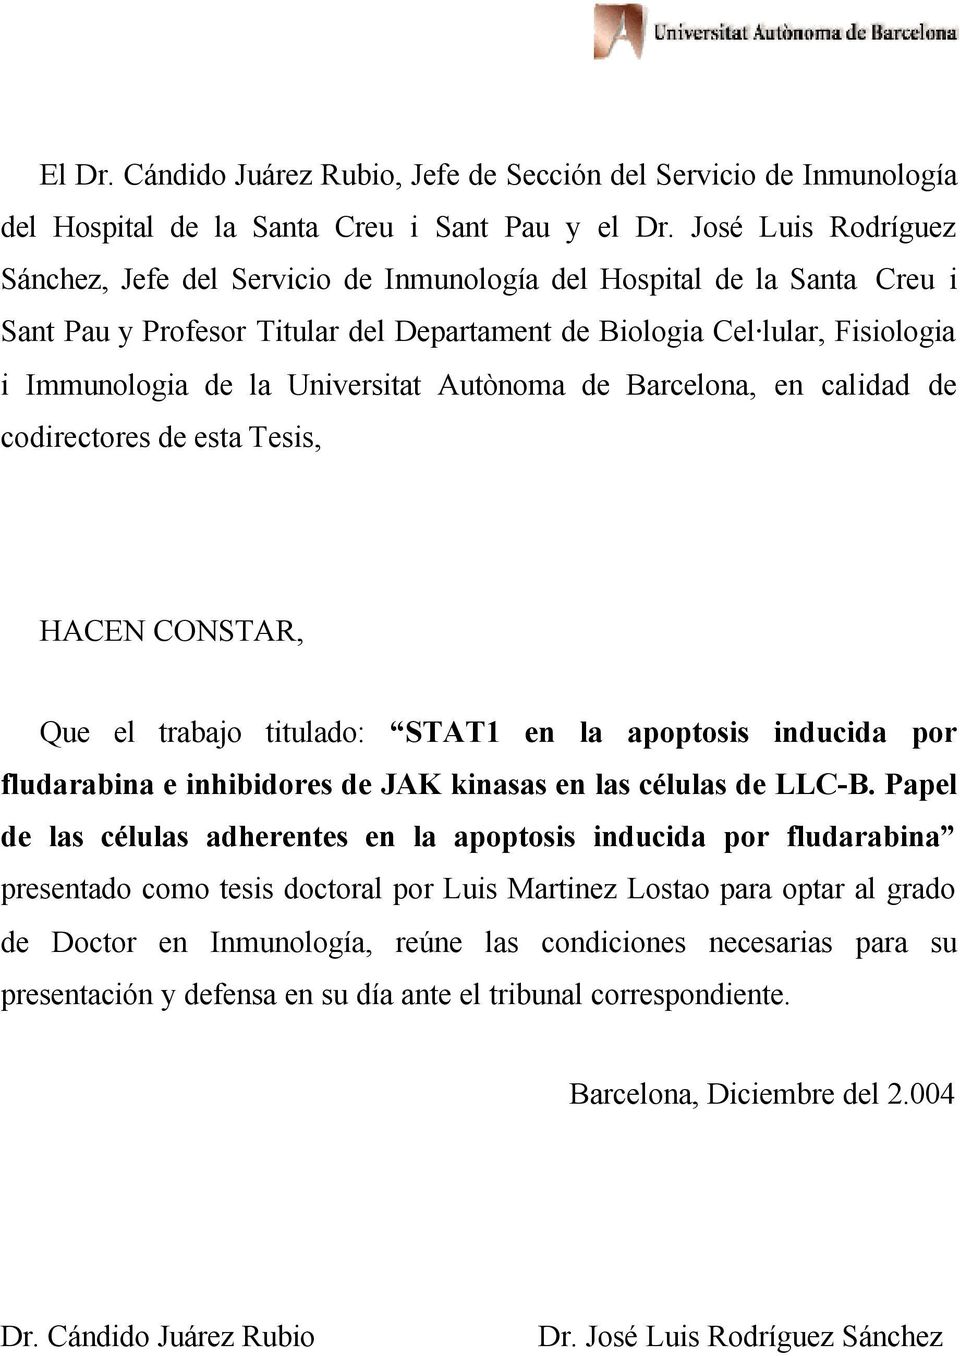 Universitat Autònoma de Barcelona, en calidad de codirectores de esta Tesis, HACEN CONSTAR, Que el trabajo titulado: STAT1 en la apoptosis inducida por fludarabina e inhibidores de JAK kinasas en las